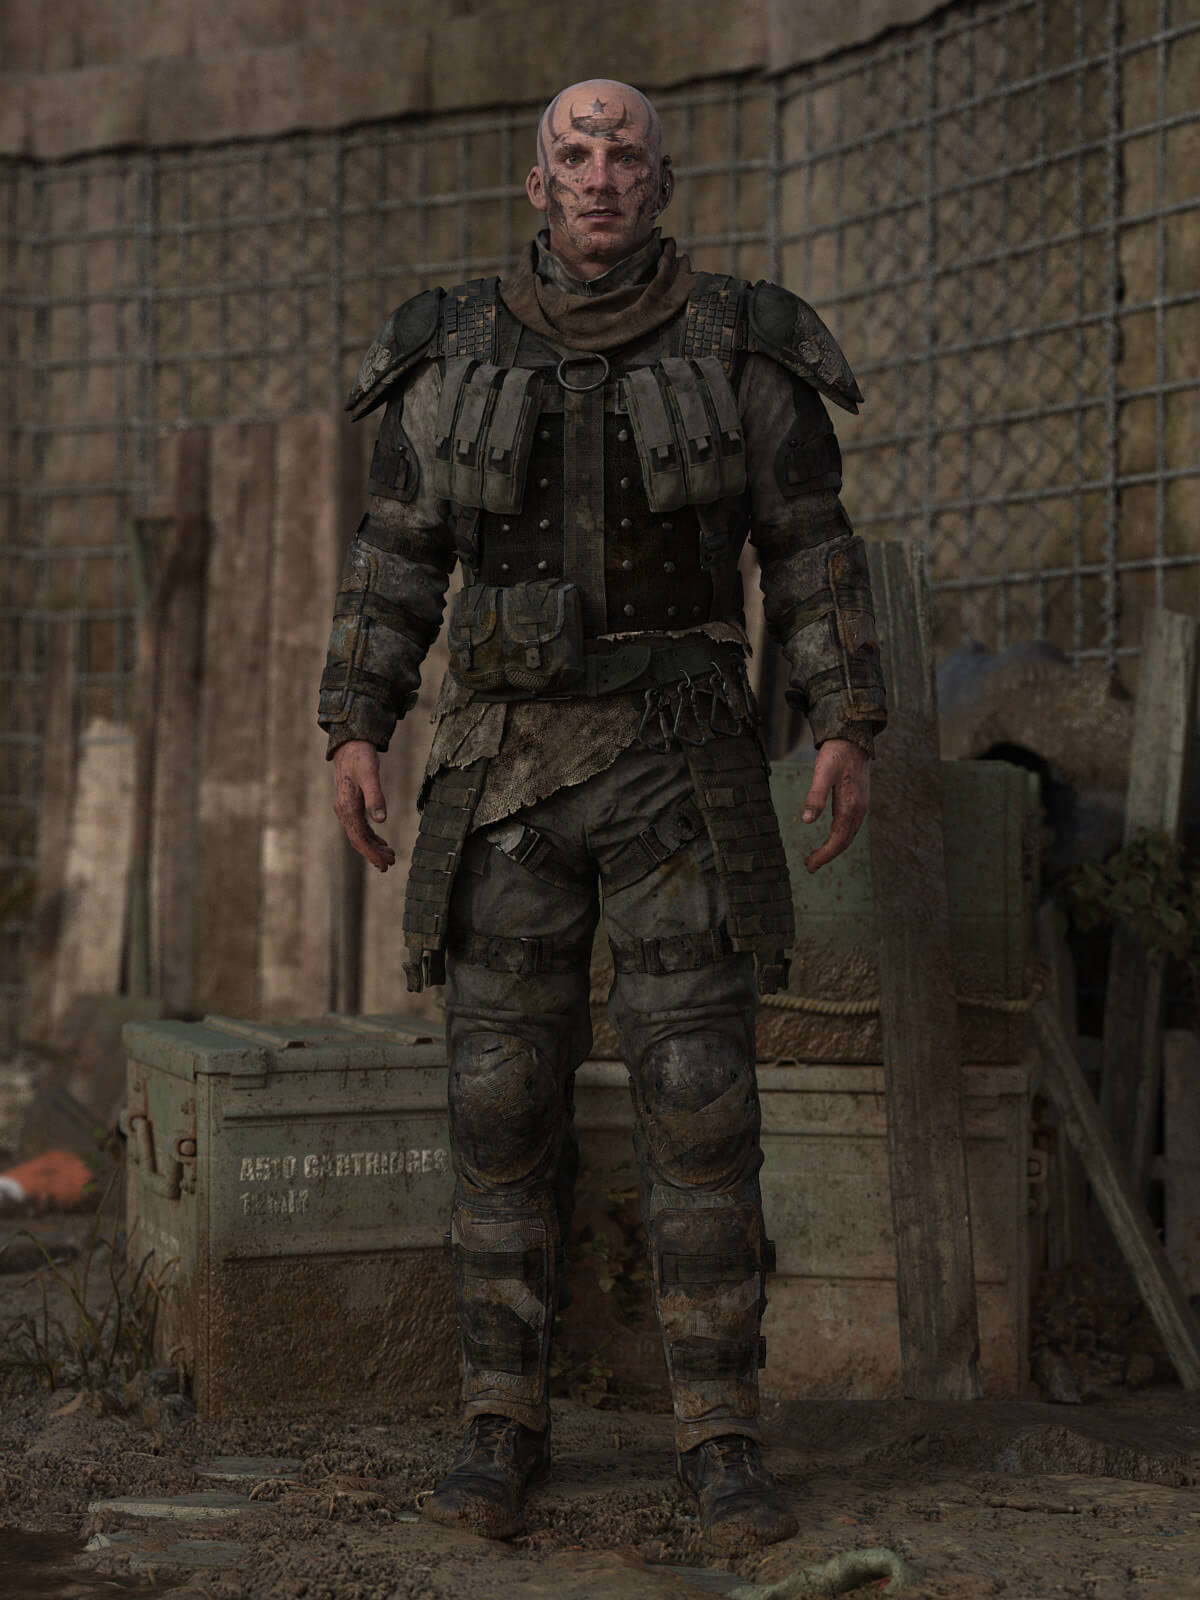 Image for Objevily se obrázky ze zrušené Call of Duty verze DOOM 4